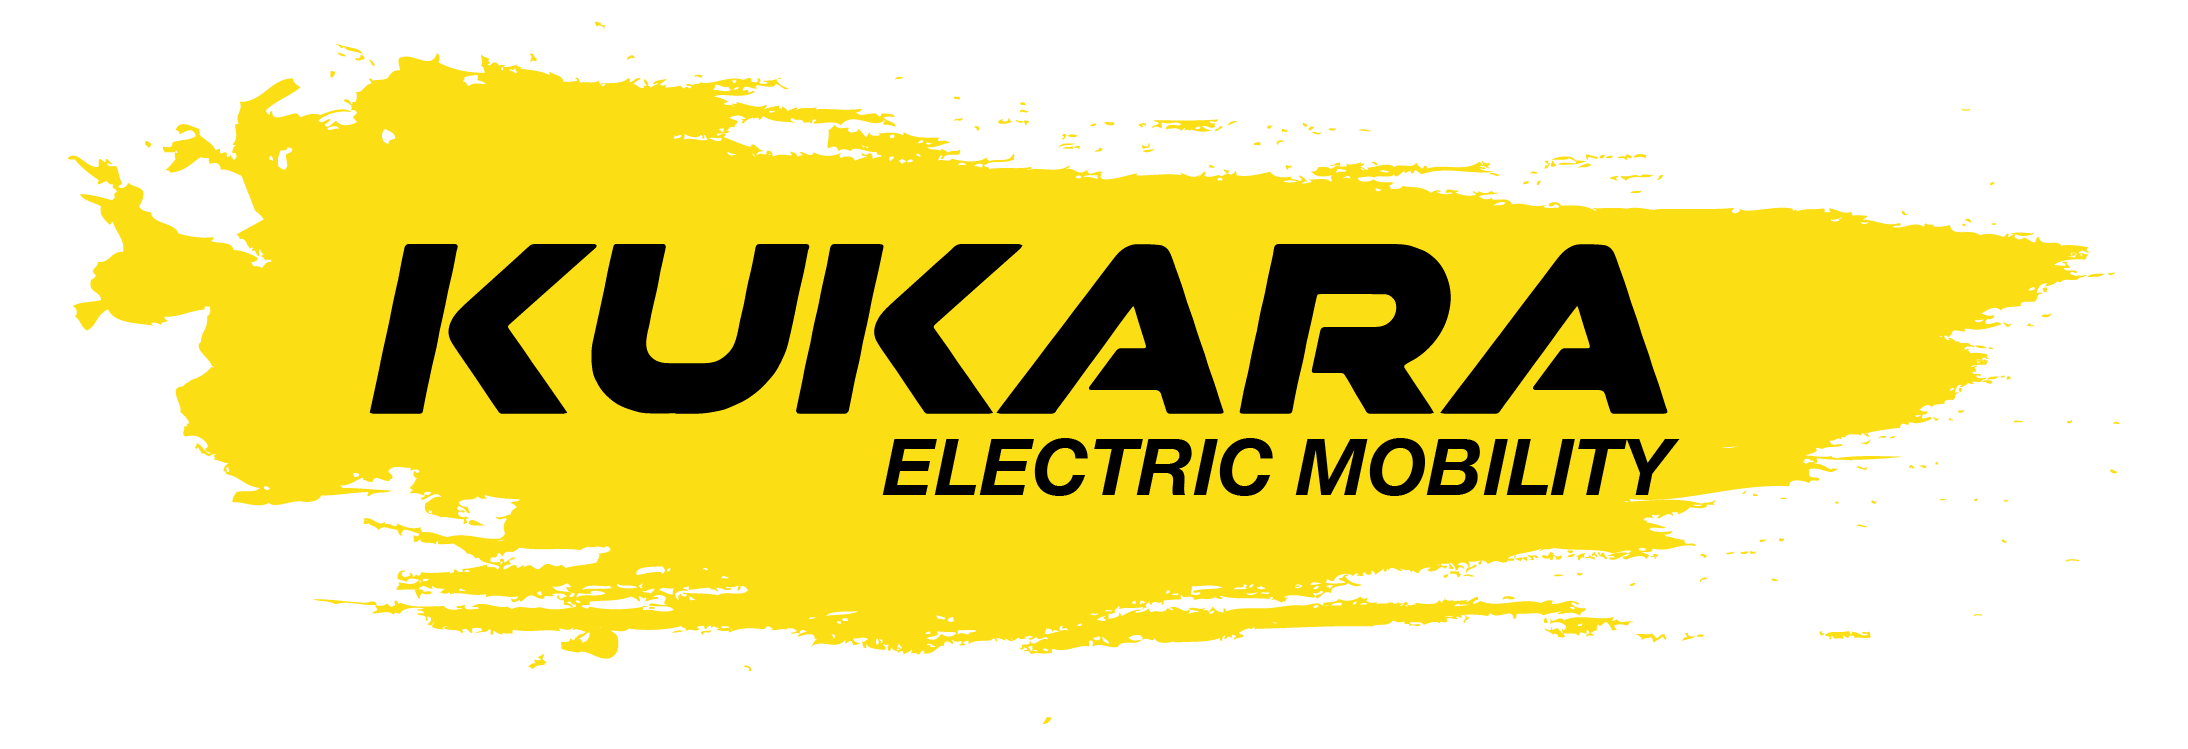 Logo Kukara Kukara Movilidad Eléctrica